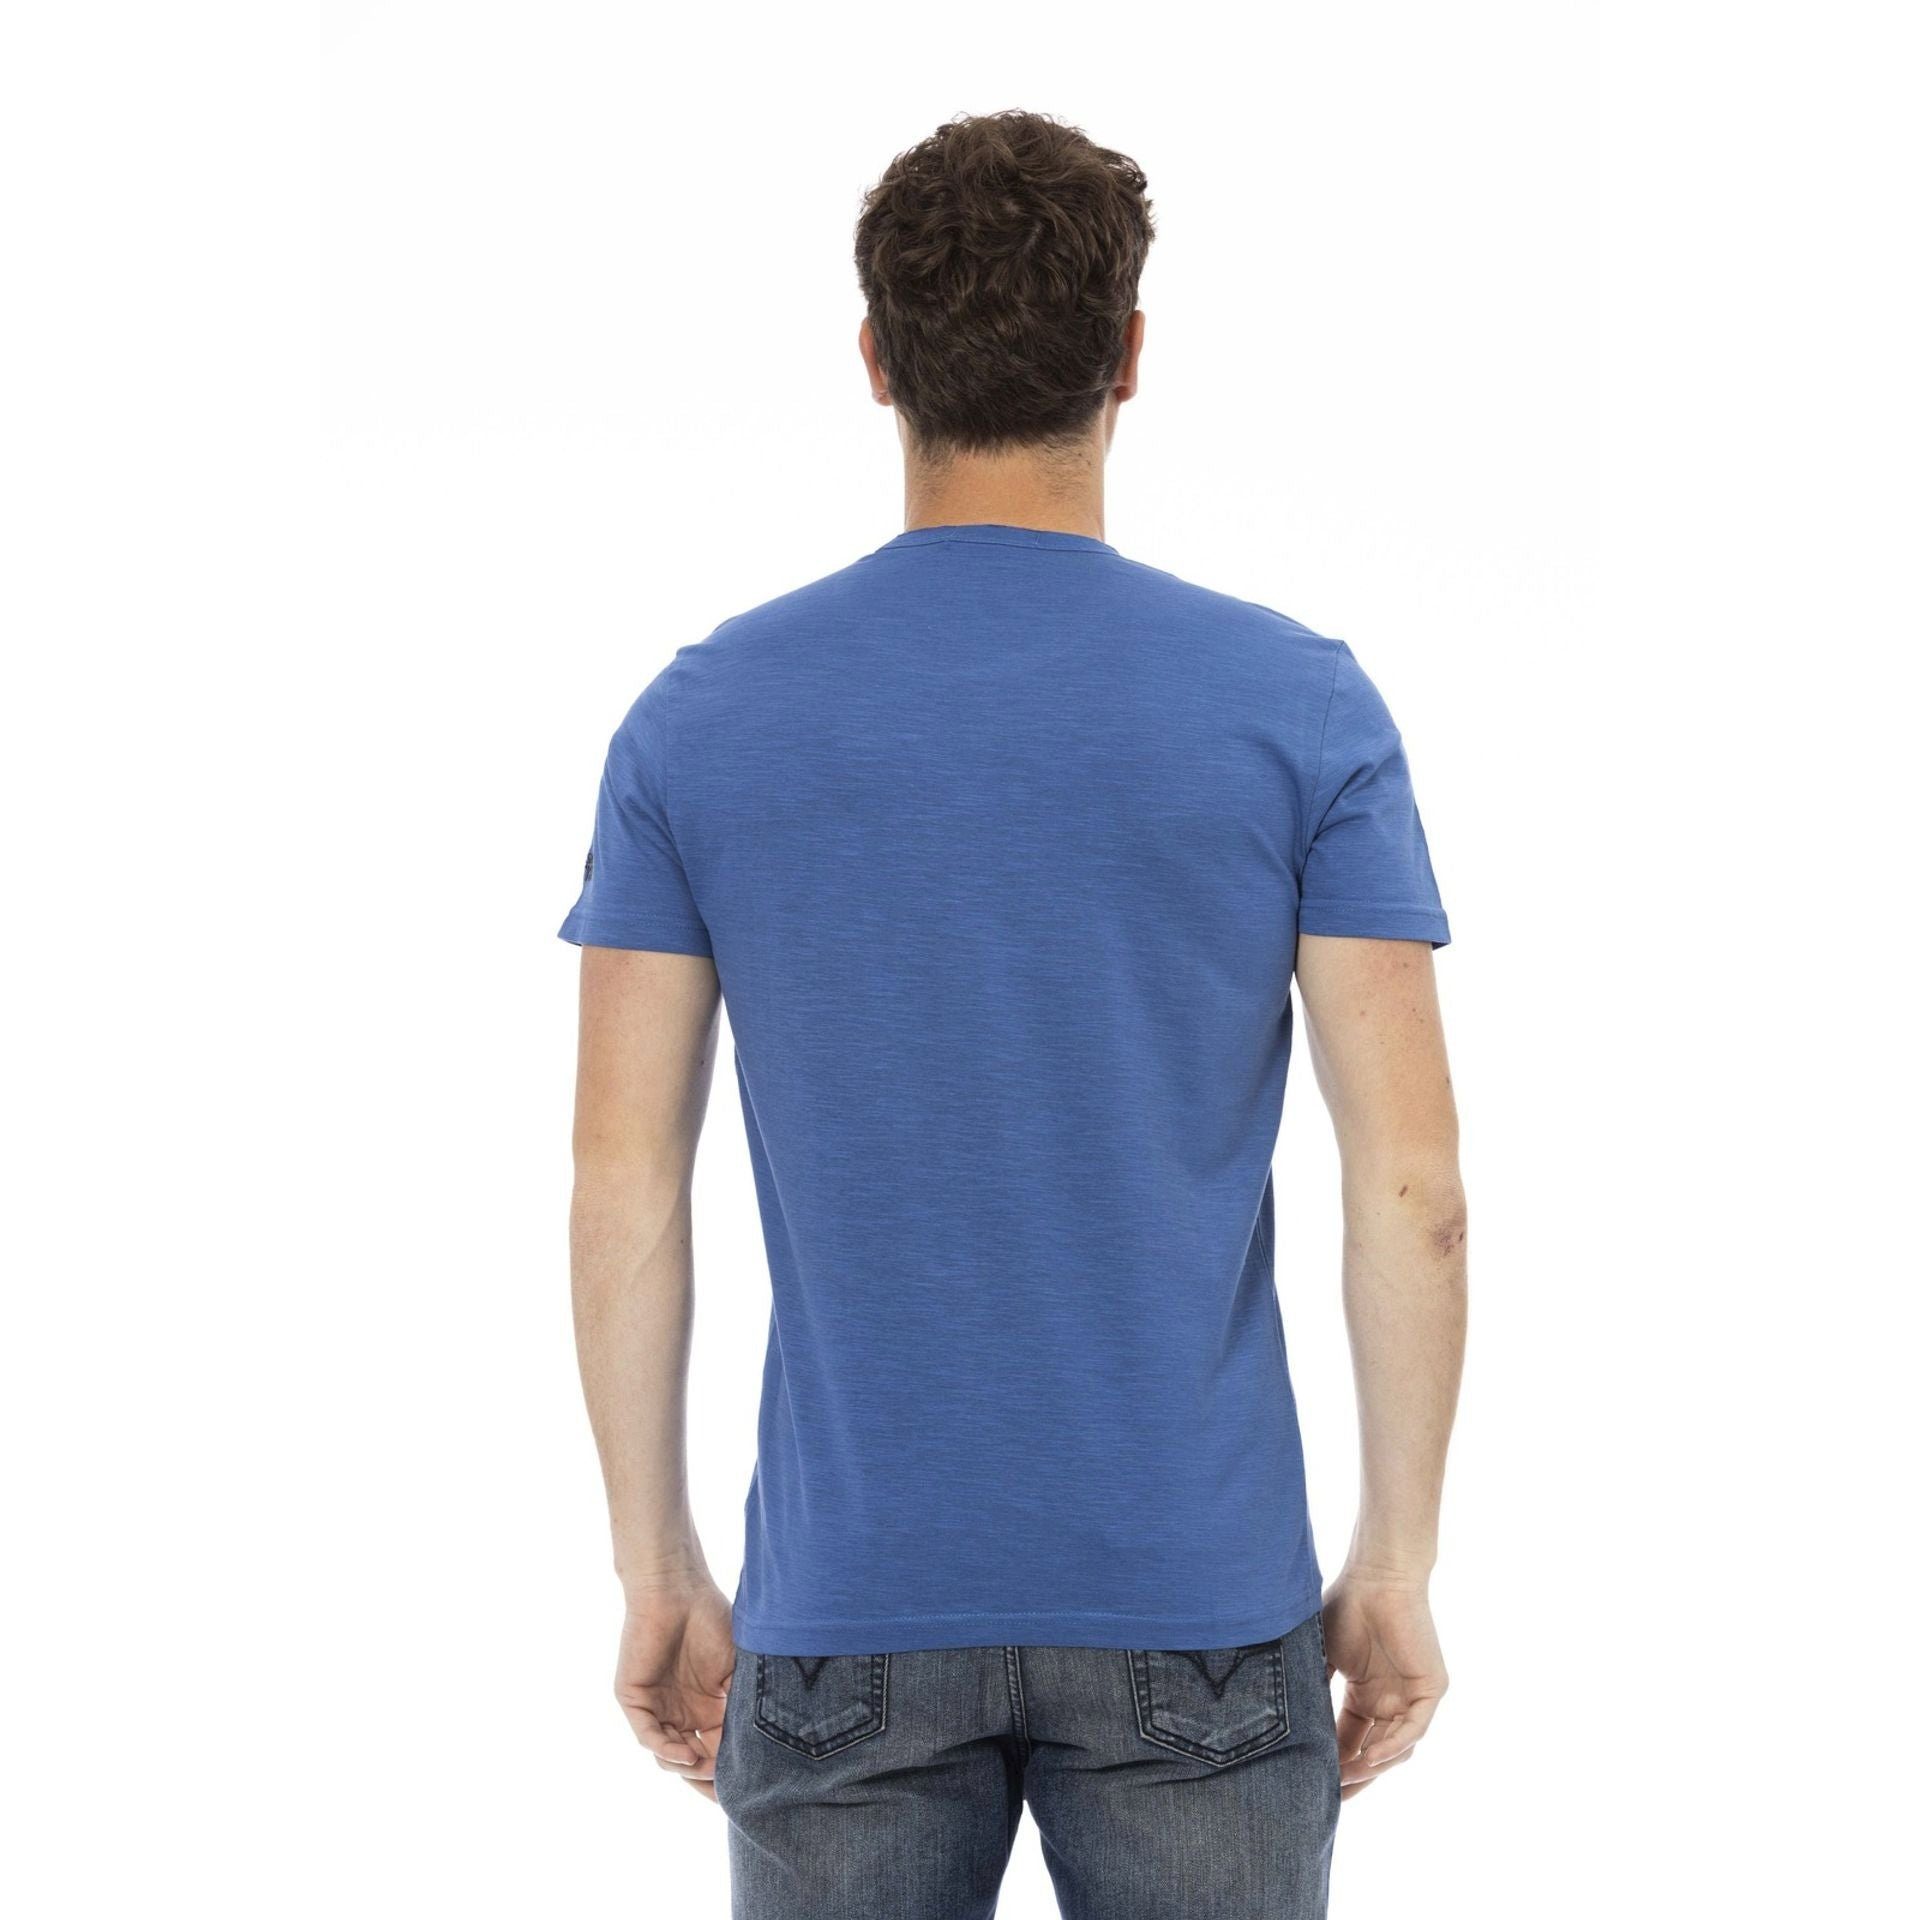 Trussardi T-Shirt Trussardi sich T-Shirts, das Blau Action Es Logo-Muster aus, stilvolle durch aber eine verleiht Note subtile, zeichnet das